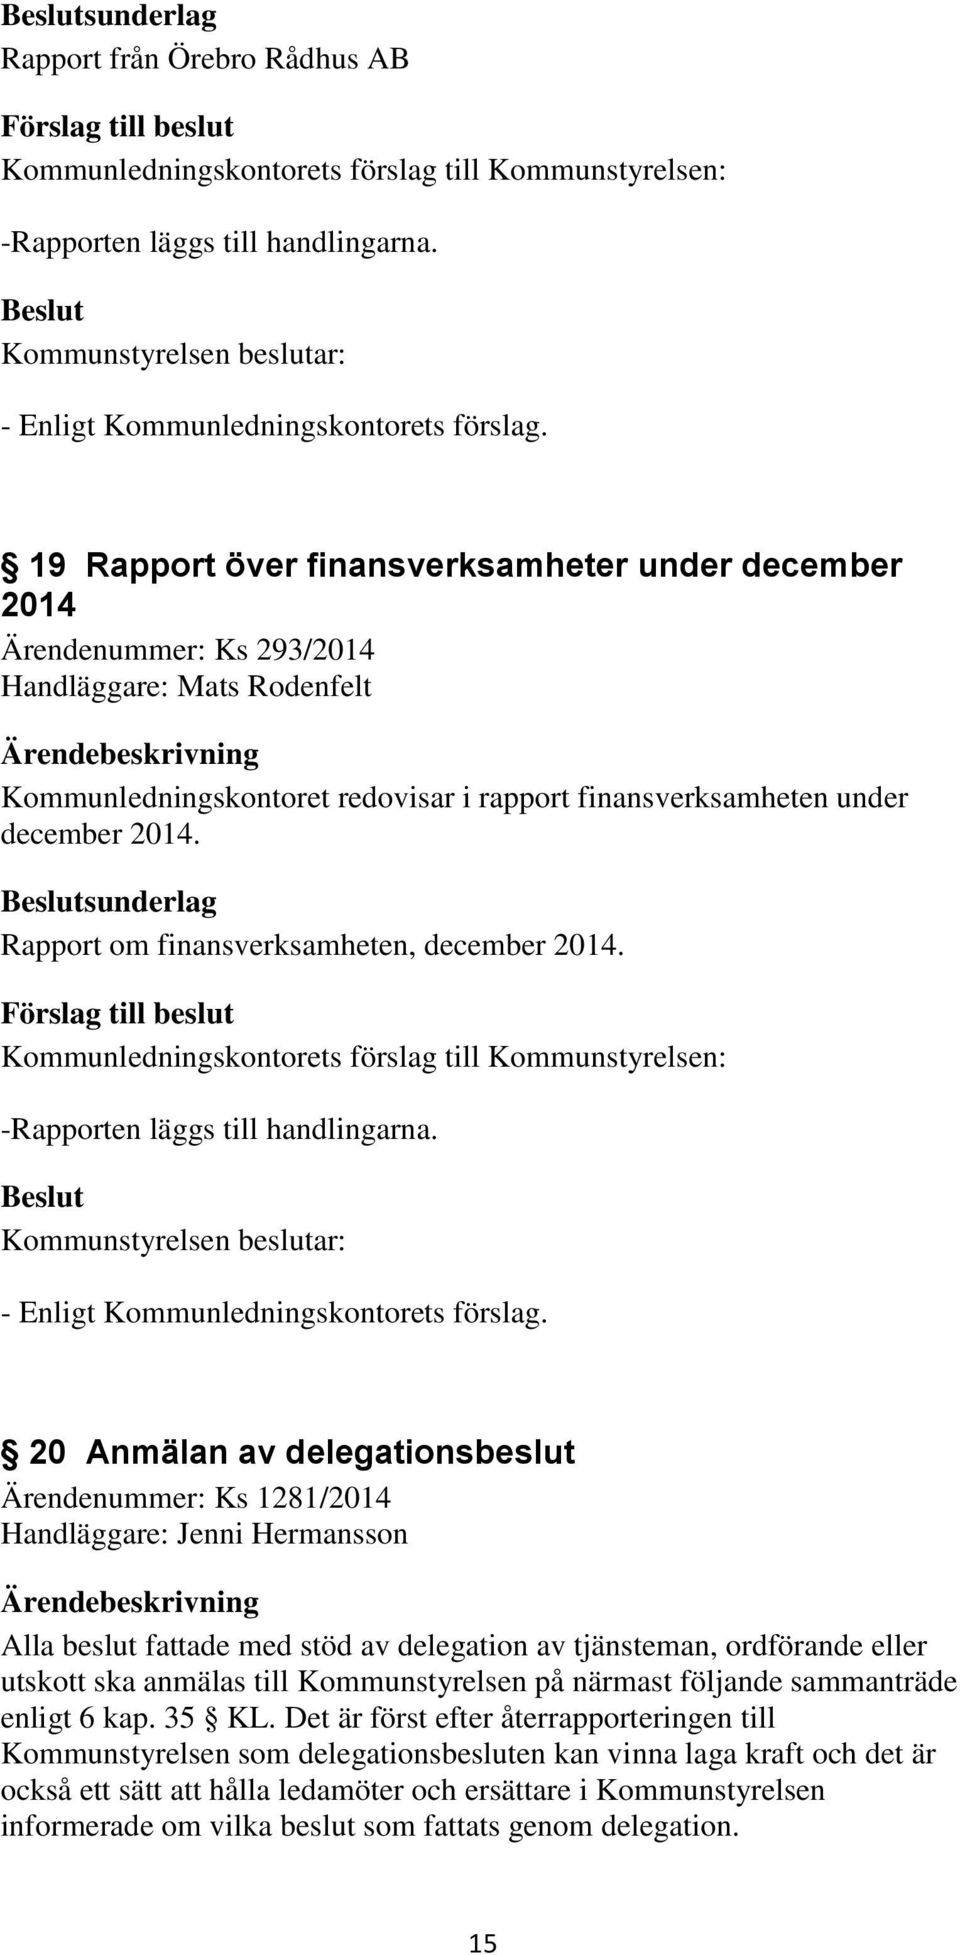 sunderlag Rapport om finansverksamheten, december 2014. -Rapporten läggs till handlingarna. - Enligt Kommunledningskontorets förslag.